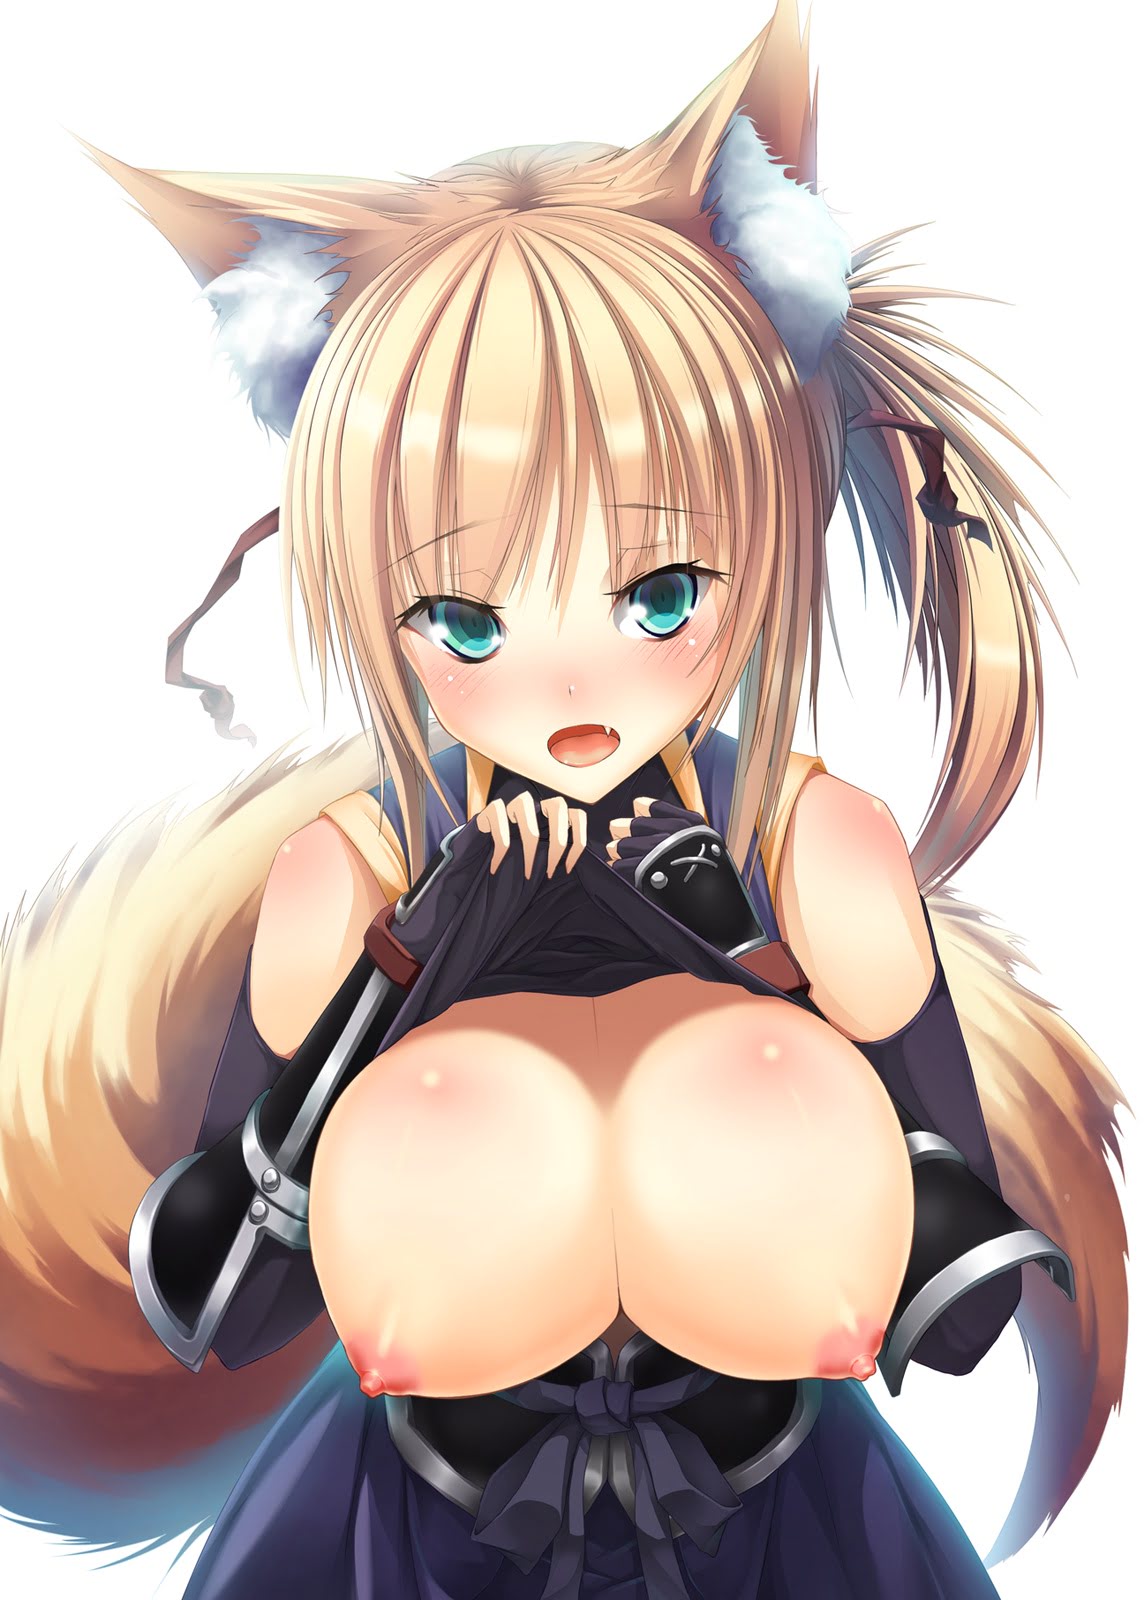 Anime fox girl boobs sexy